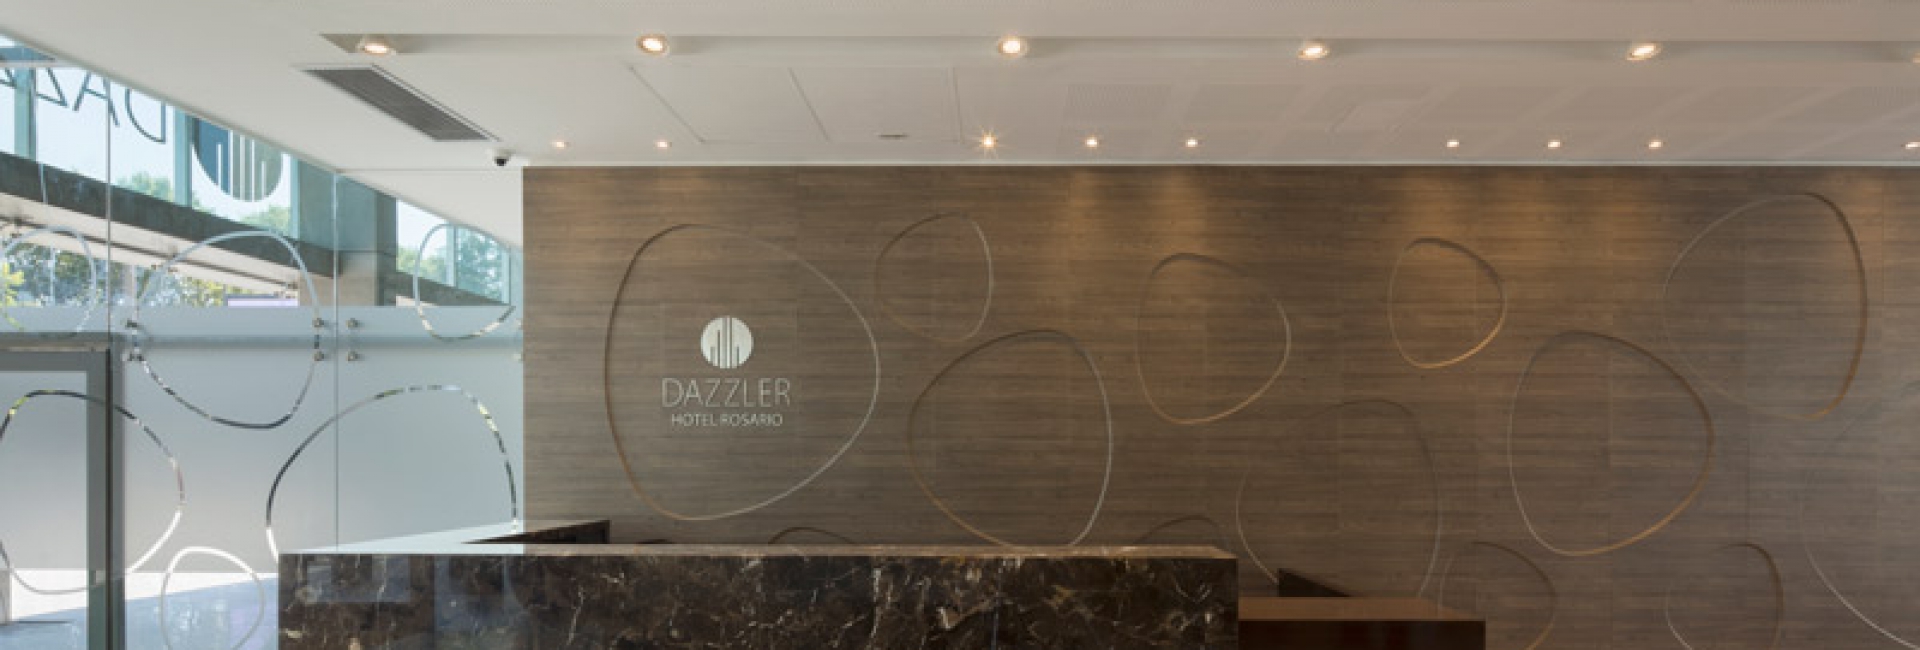 Hotel Dazzler | Fotos Finales